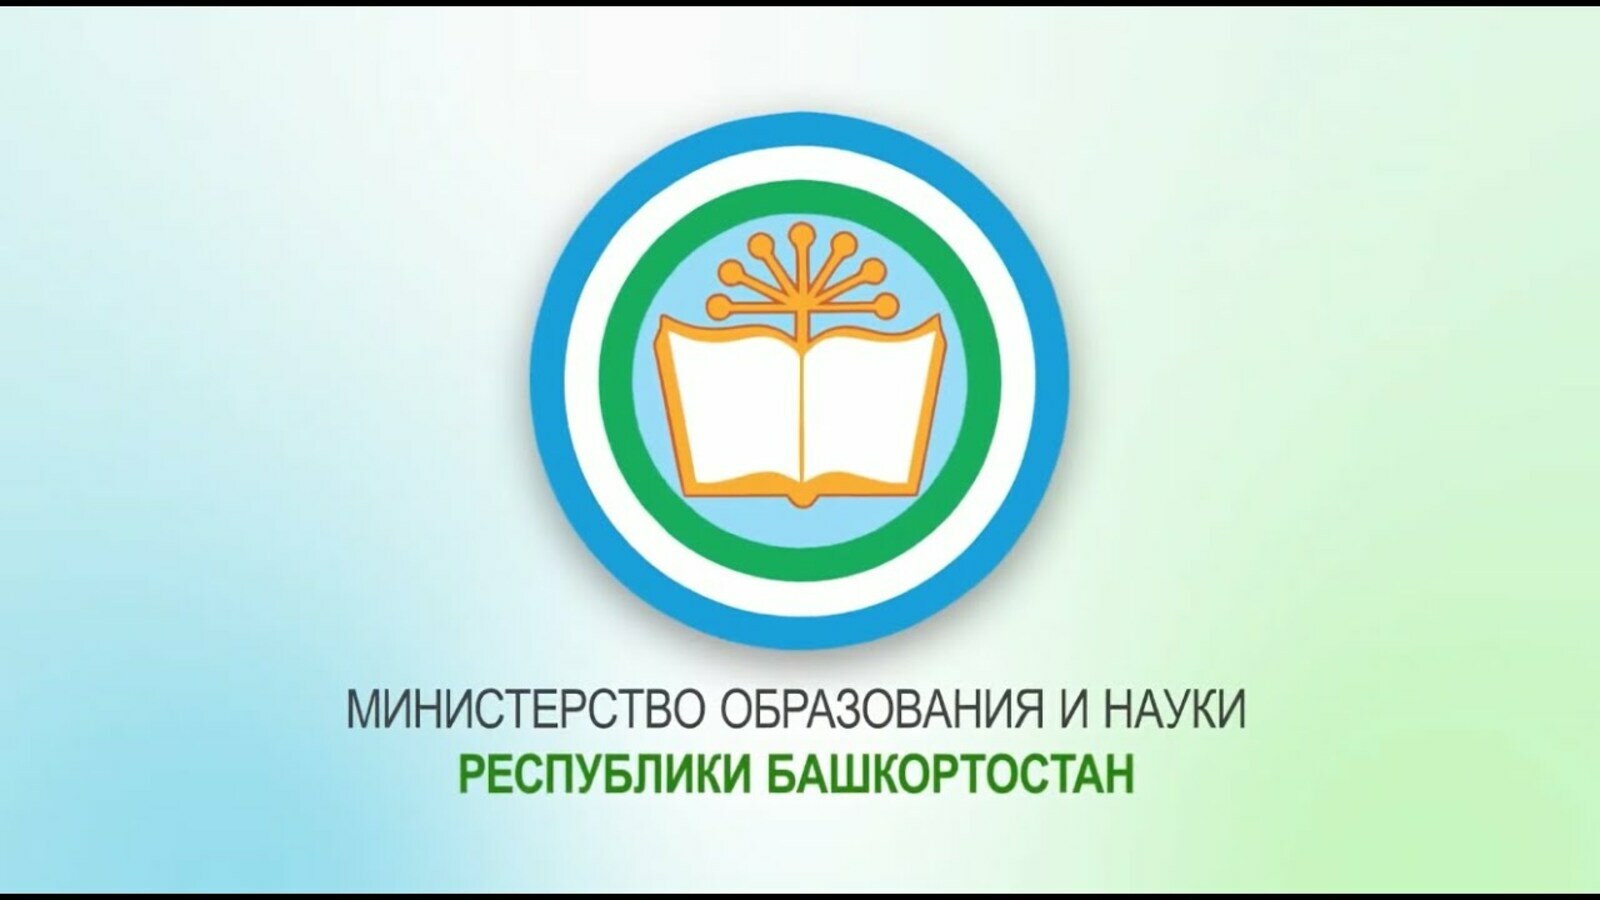 В Башкортостане будет создан Международный центр профессионального образования